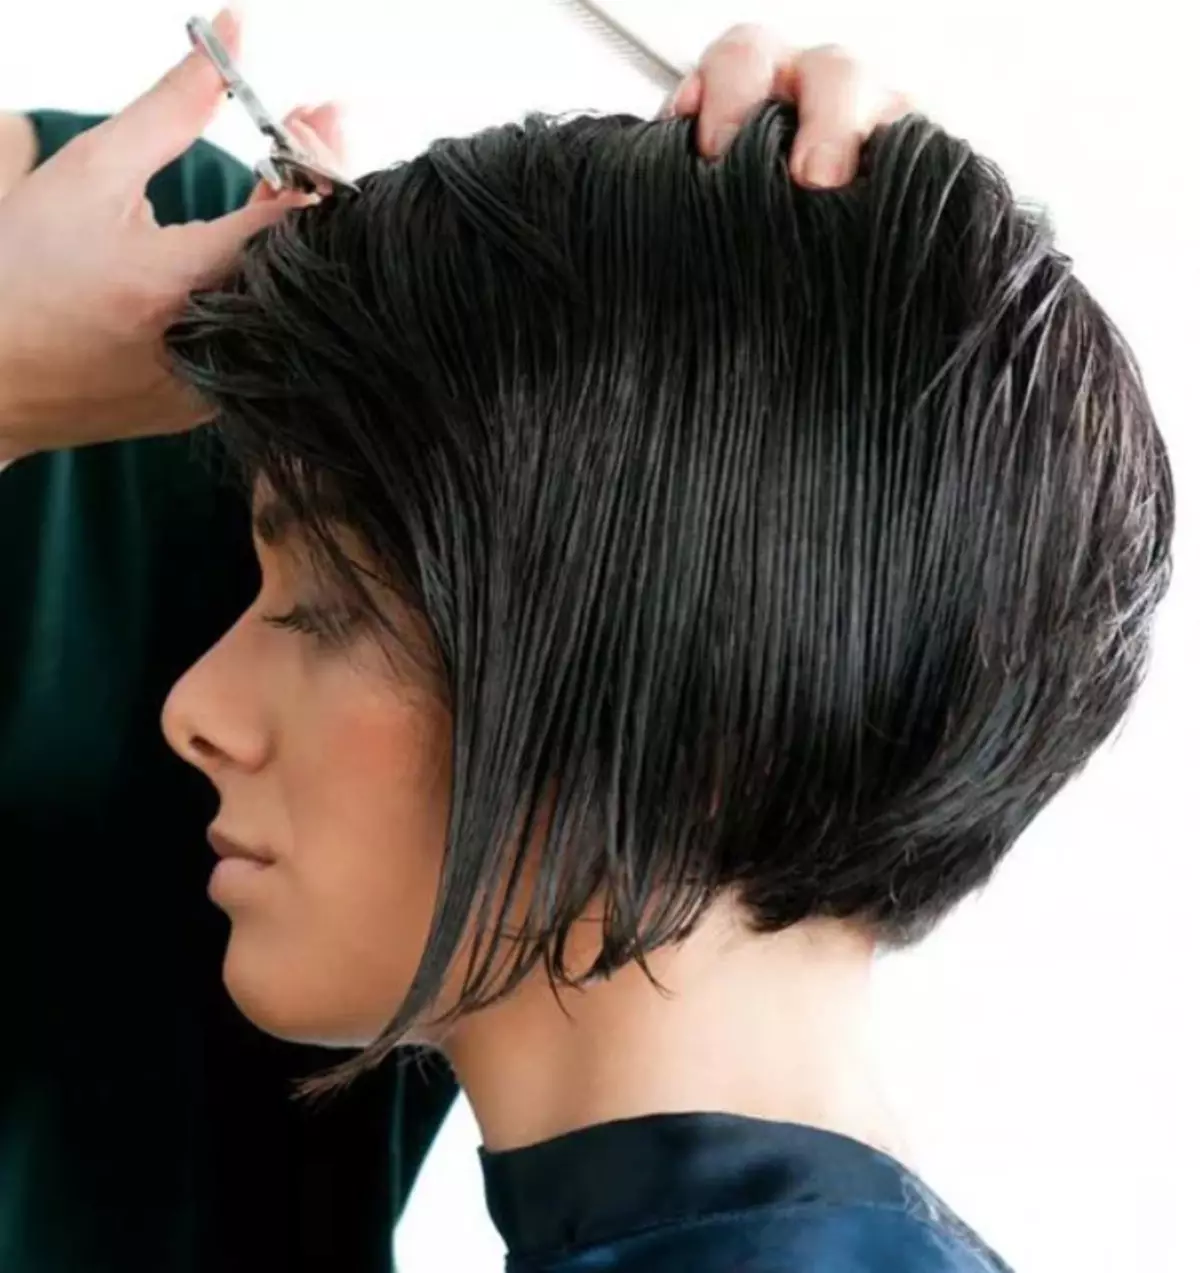 کلاسیک باب (28 عکس): چگونه یک مدل مو را بسازید؟ آیا ممکن است یک دختر کلاسیک باب با موهای کوتاه ایجاد کنم؟ چگونه آن را بریزید؟ 16866_2